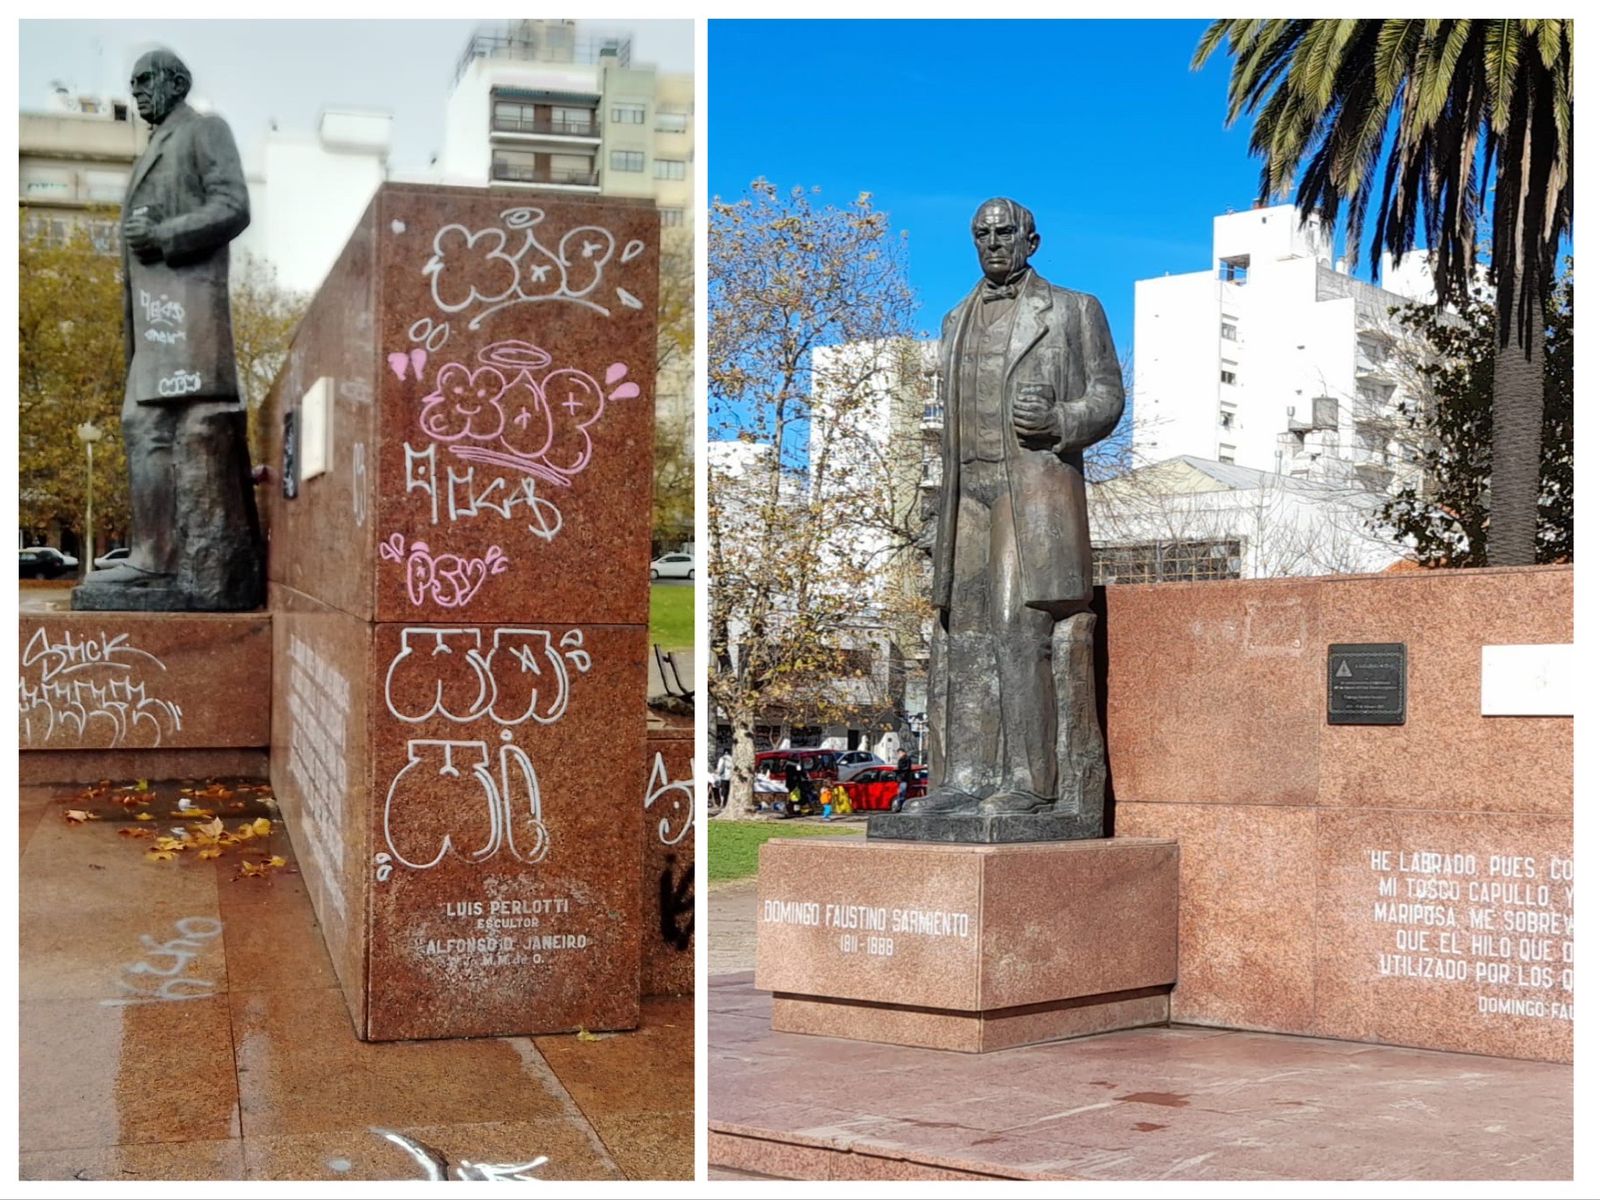 El municipio restauró el monumento a Domingo Faustino Sarmiento ubicado en Plaza Rocha